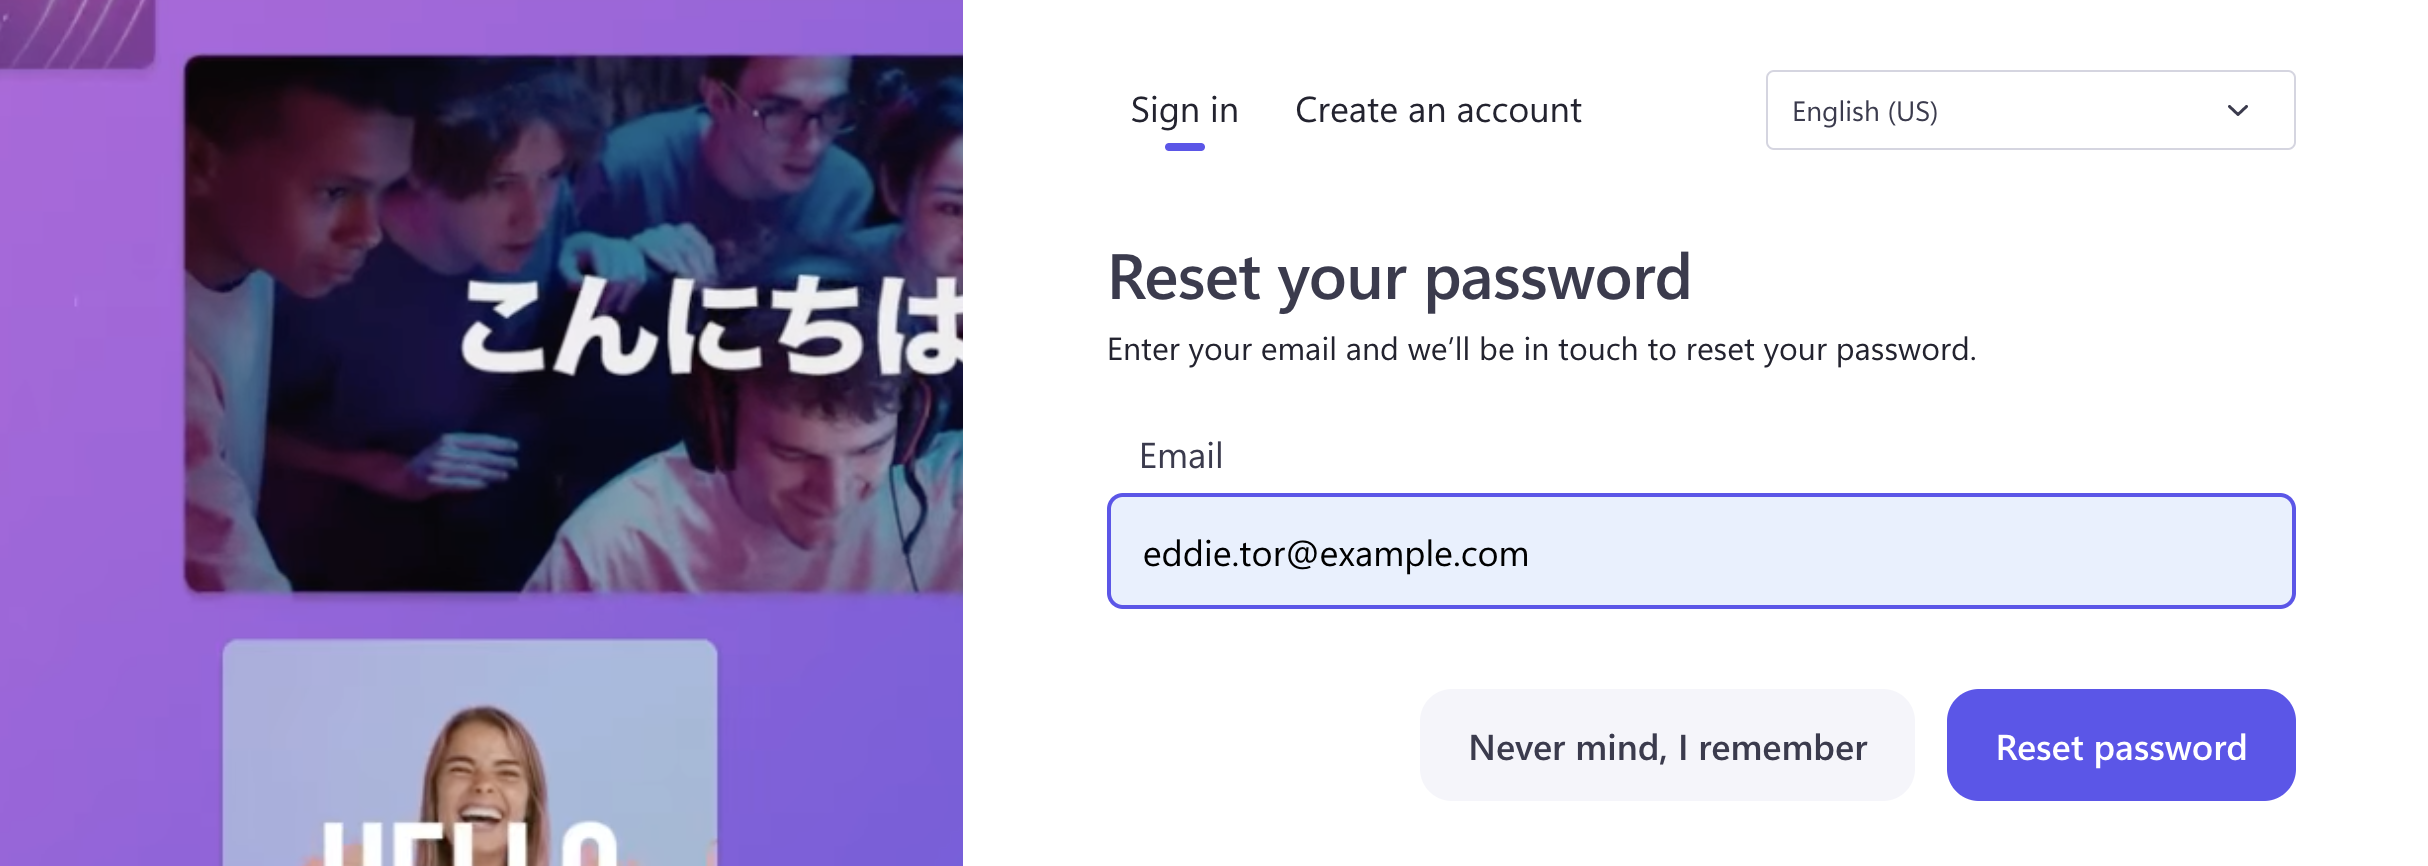 Immagine di un utente che reimposta la password.